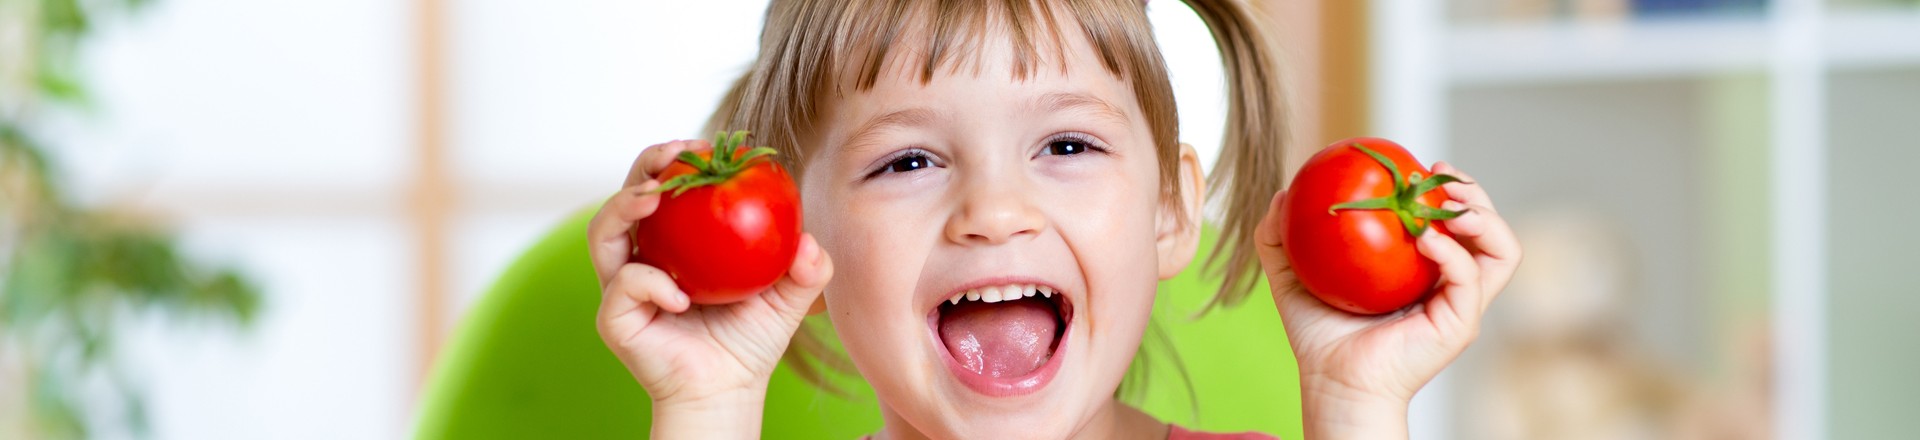 healthy diet for children